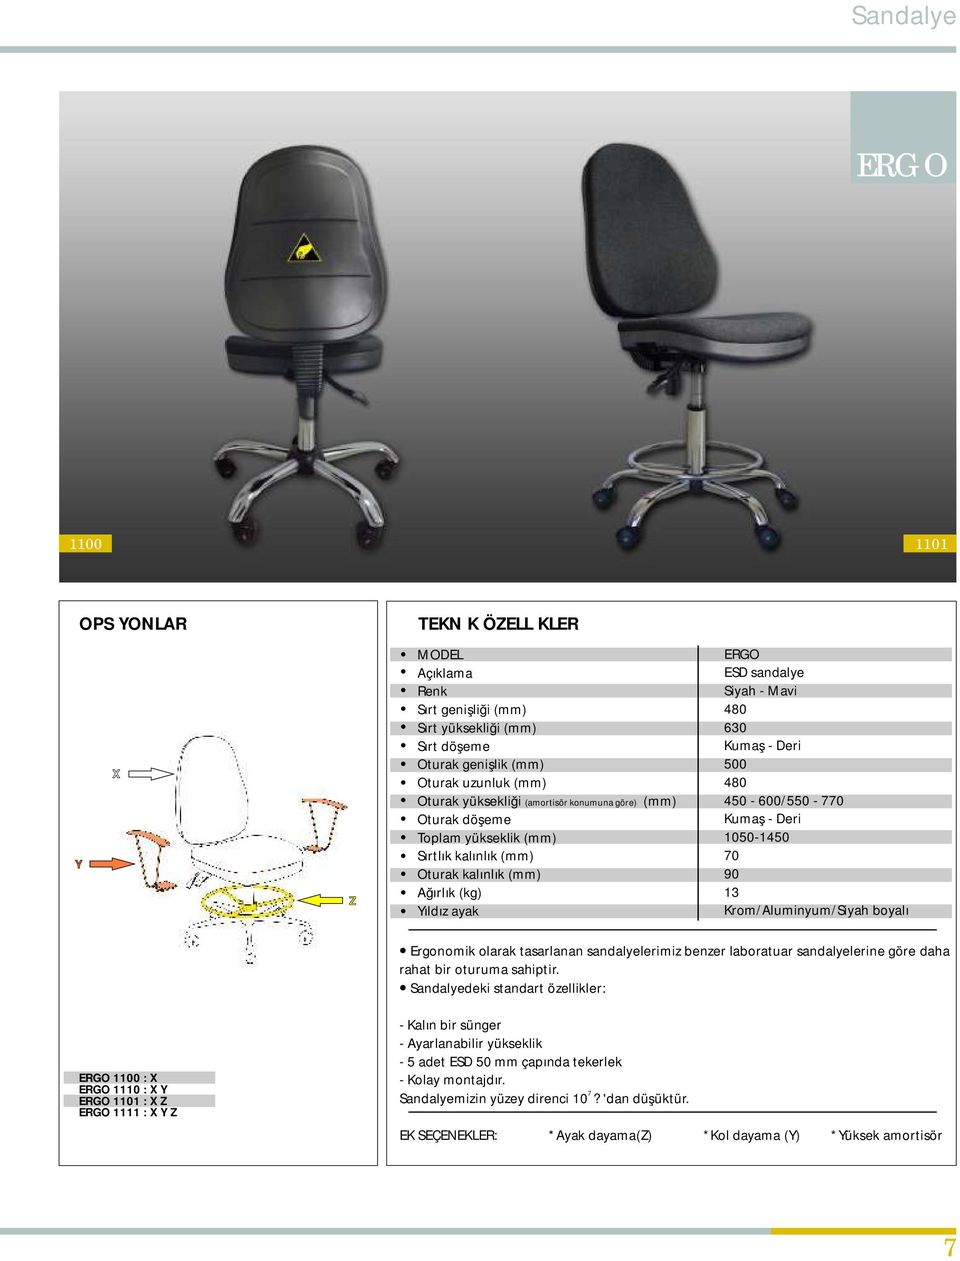 450-600/550-770 Kumaş - Deri 1050-1450 70 90 13 Krom/Aluminyum/Siyah boyalı Ergonomik olarak tasarlanan sandalyelerimiz benzer laboratuar sandalyelerine göre daha rahat bir oturuma sahiptir.